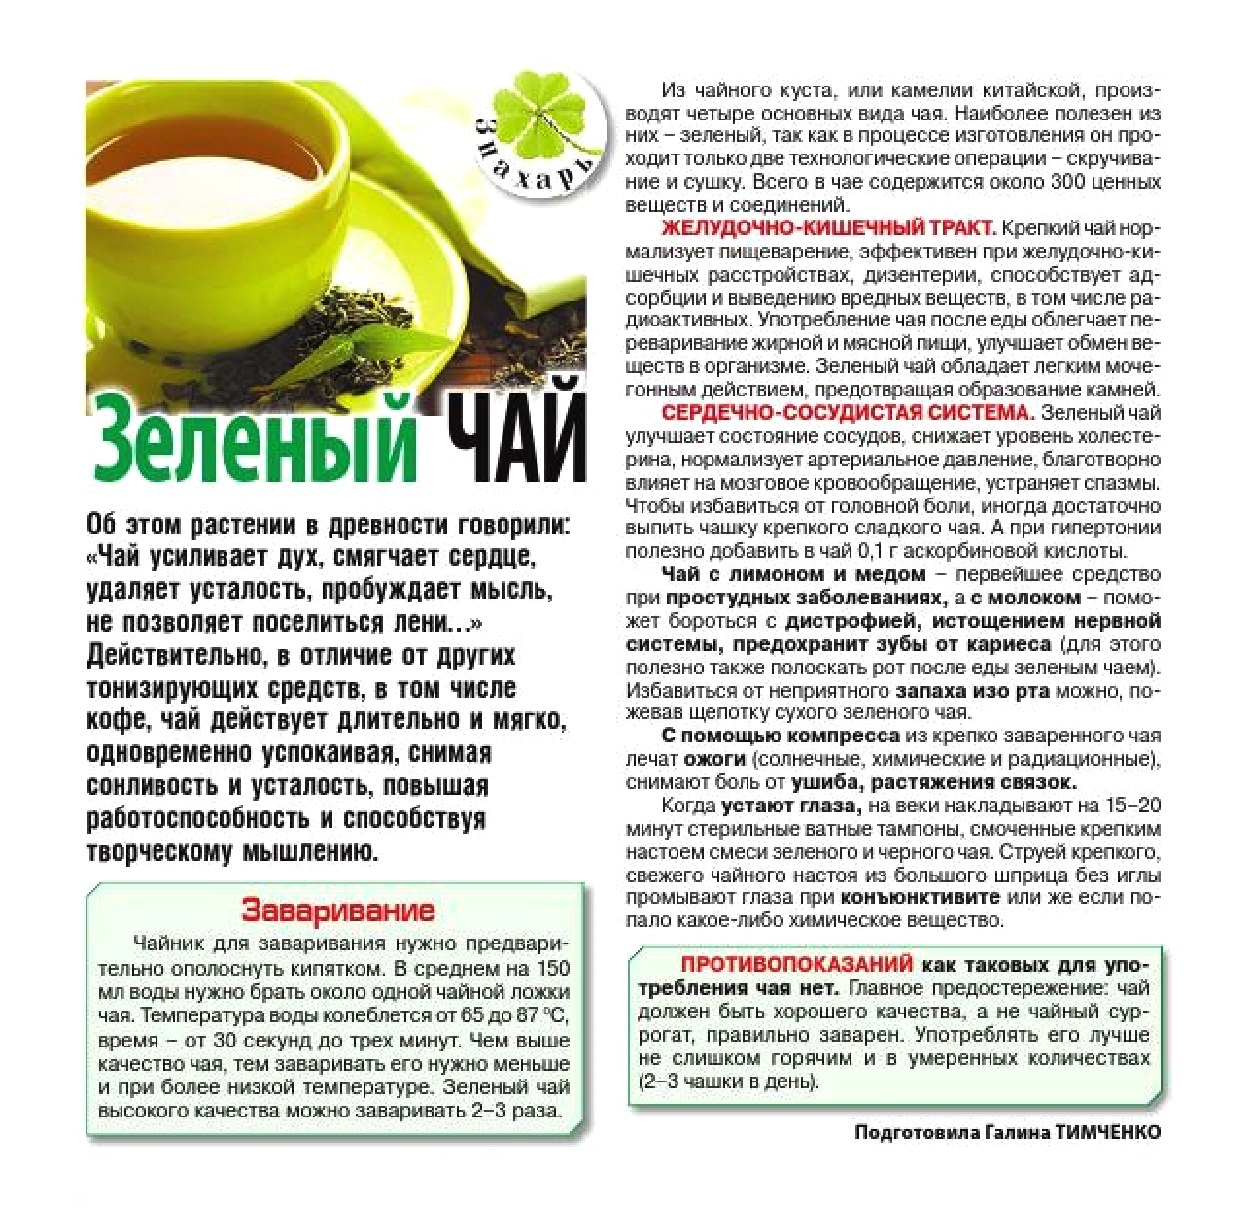 Польза зеленого чая для организма мужчины